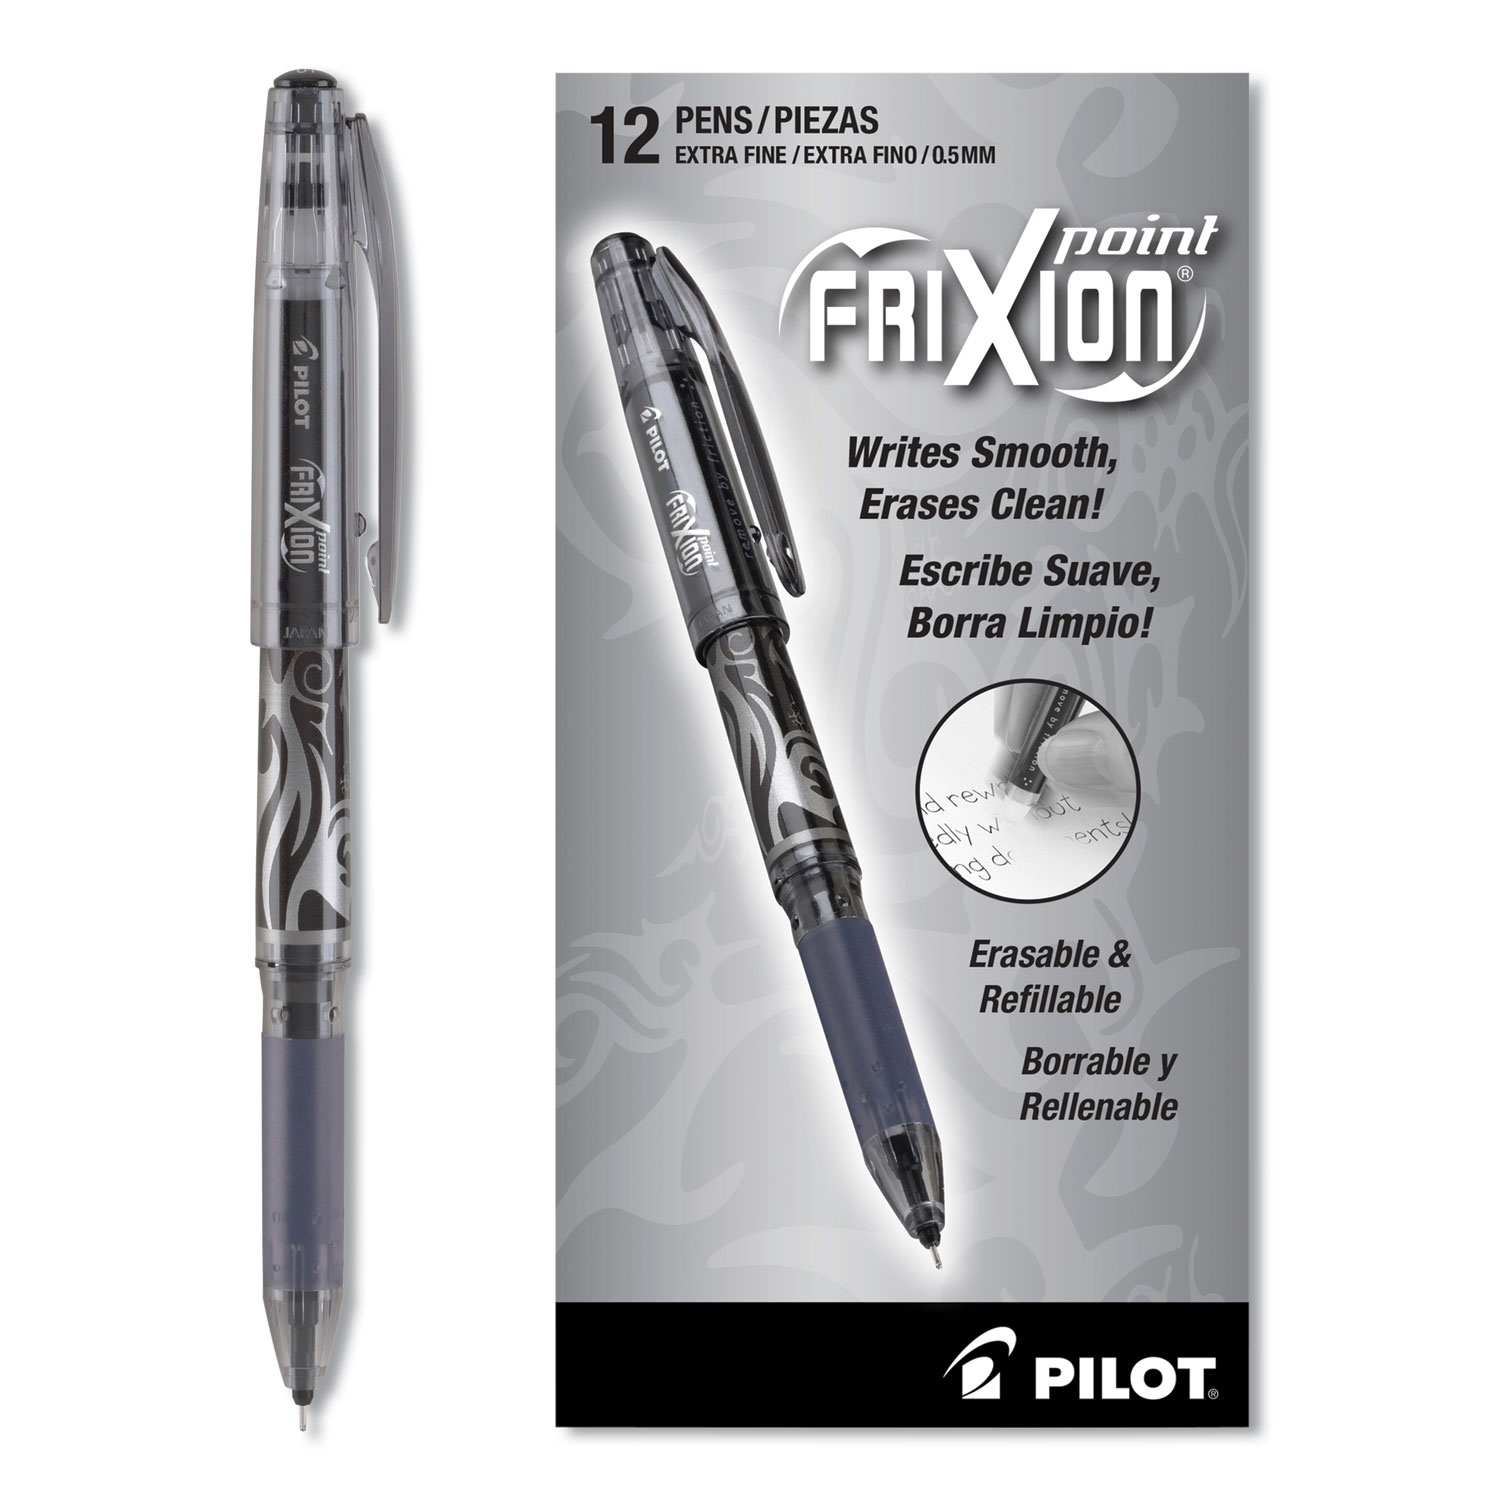 Pilot frixion erasable 0.5mm roller pen ----3 black